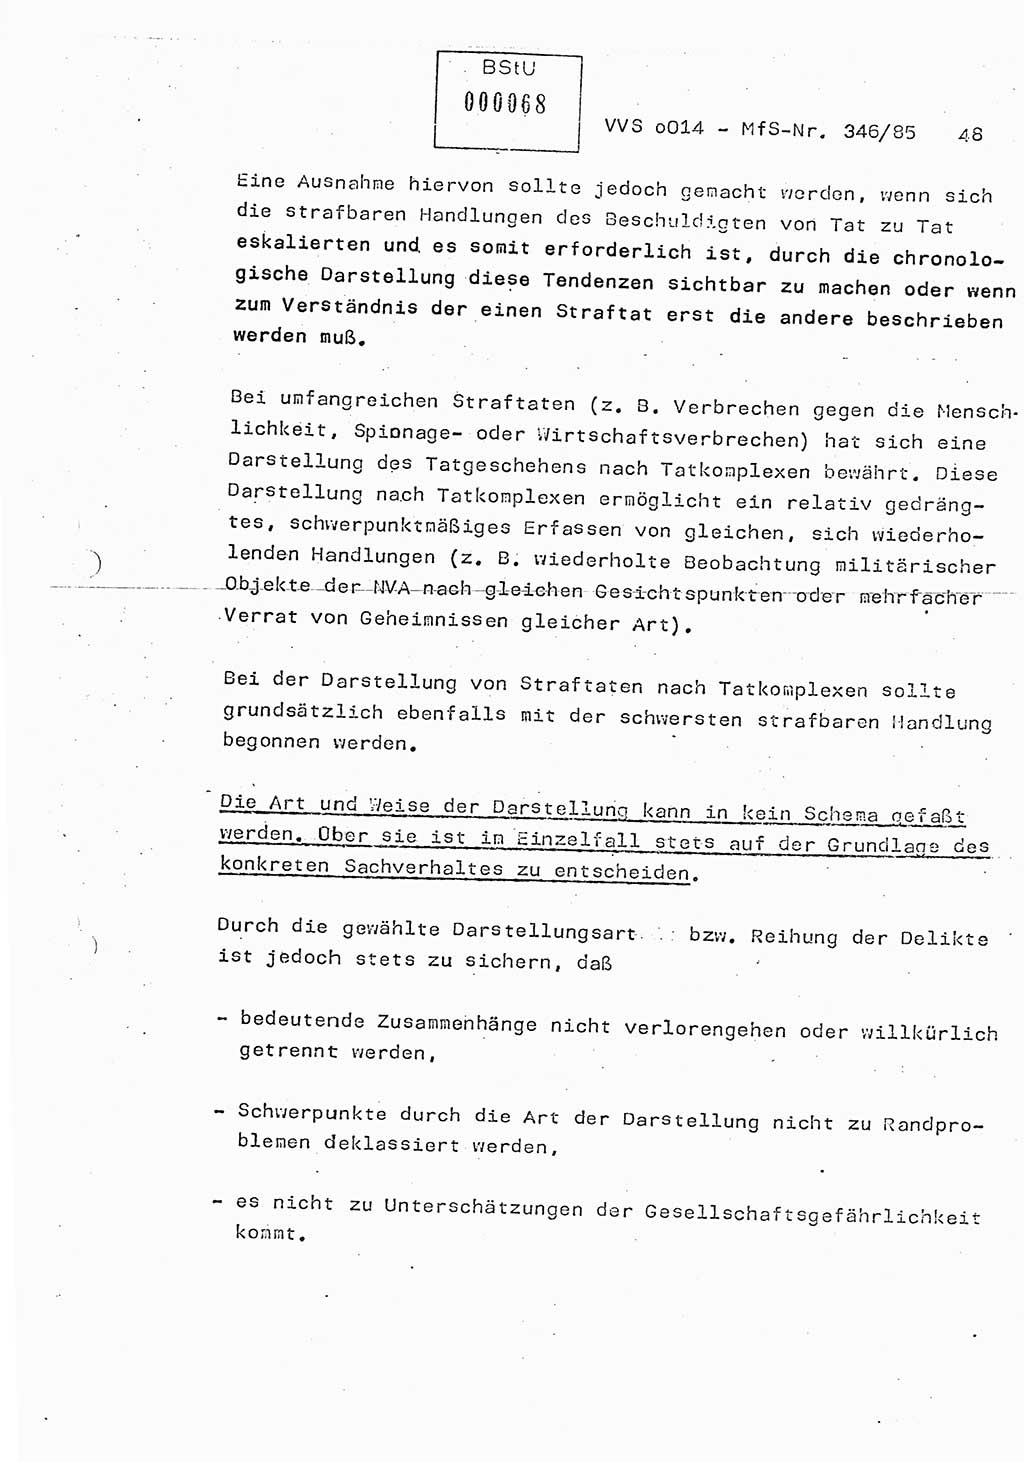 Lektion Ministerium für Staatssicherheit (MfS) [Deutsche Demokratische Republik (DDR)], Hauptabteilung (HA) Ⅸ, Vertrauliche Verschlußsache (VVS) o014-346/85, Berlin 1985, Seite 48 (Lekt. MfS DDR HA Ⅸ VVS o014-346/85 1985, S. 48)